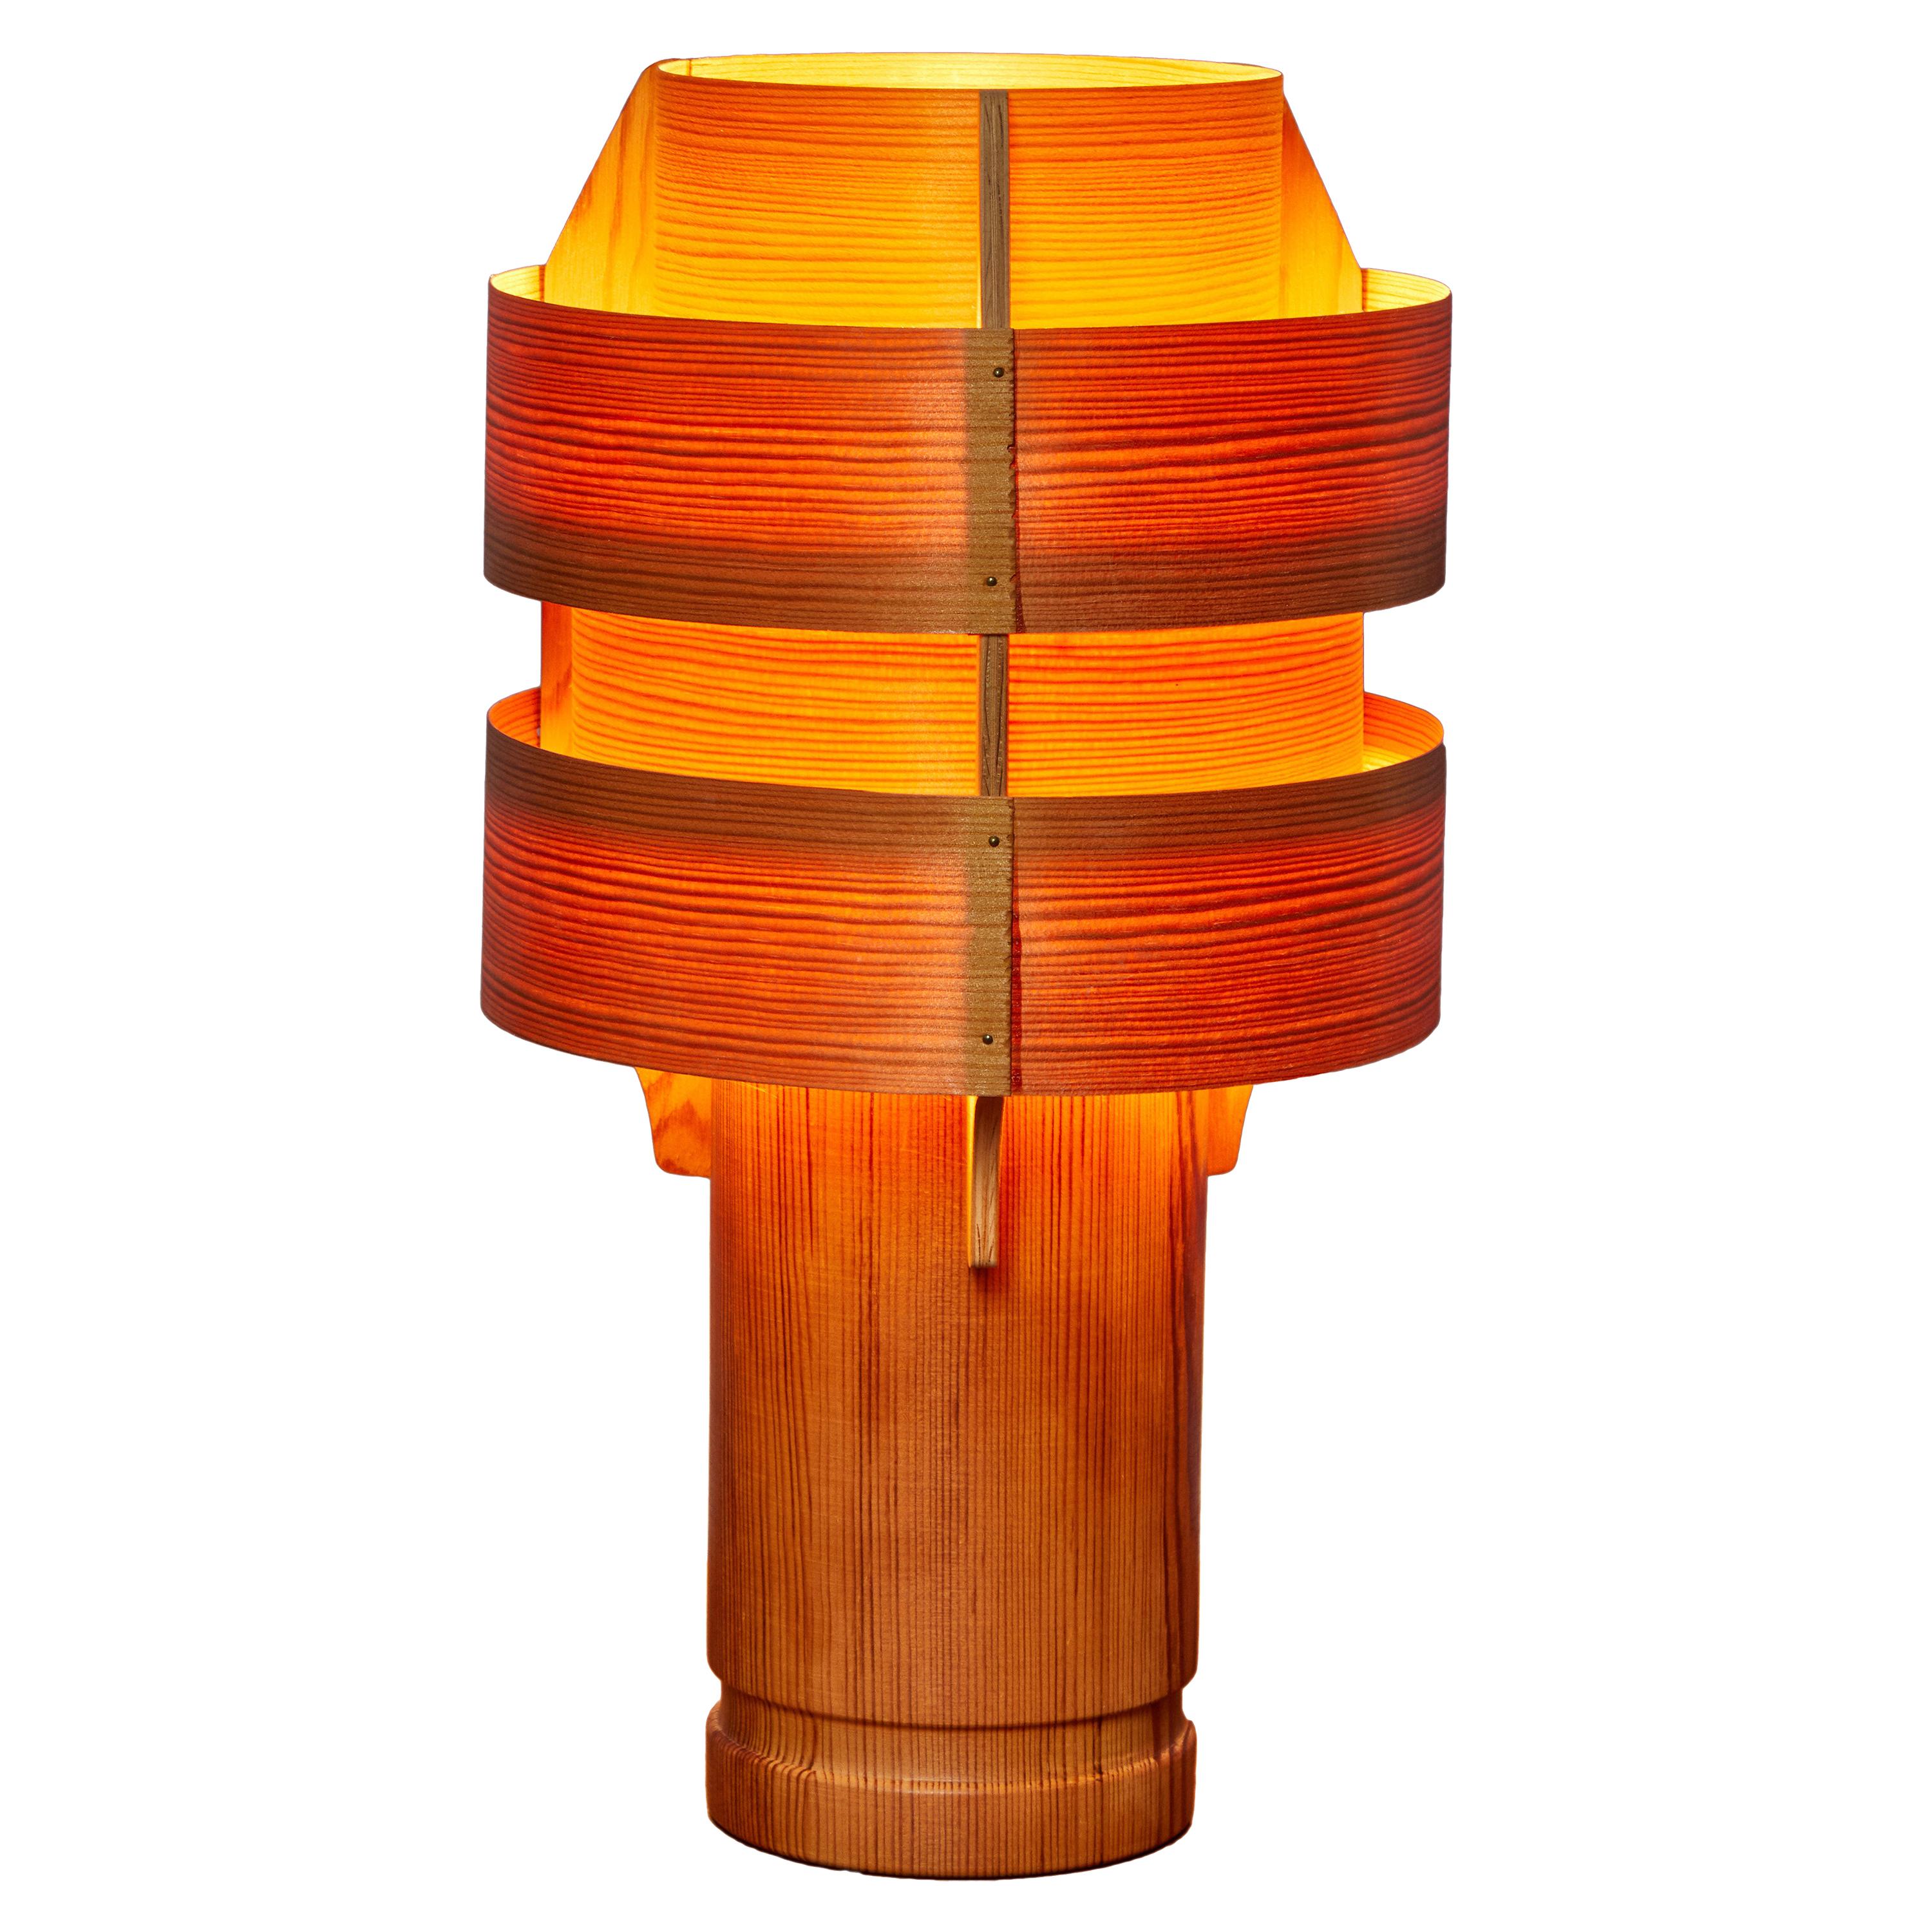 1960s Hans-Agne Jakobsson Model 243 Wood Table Lamp for AB Ellysett